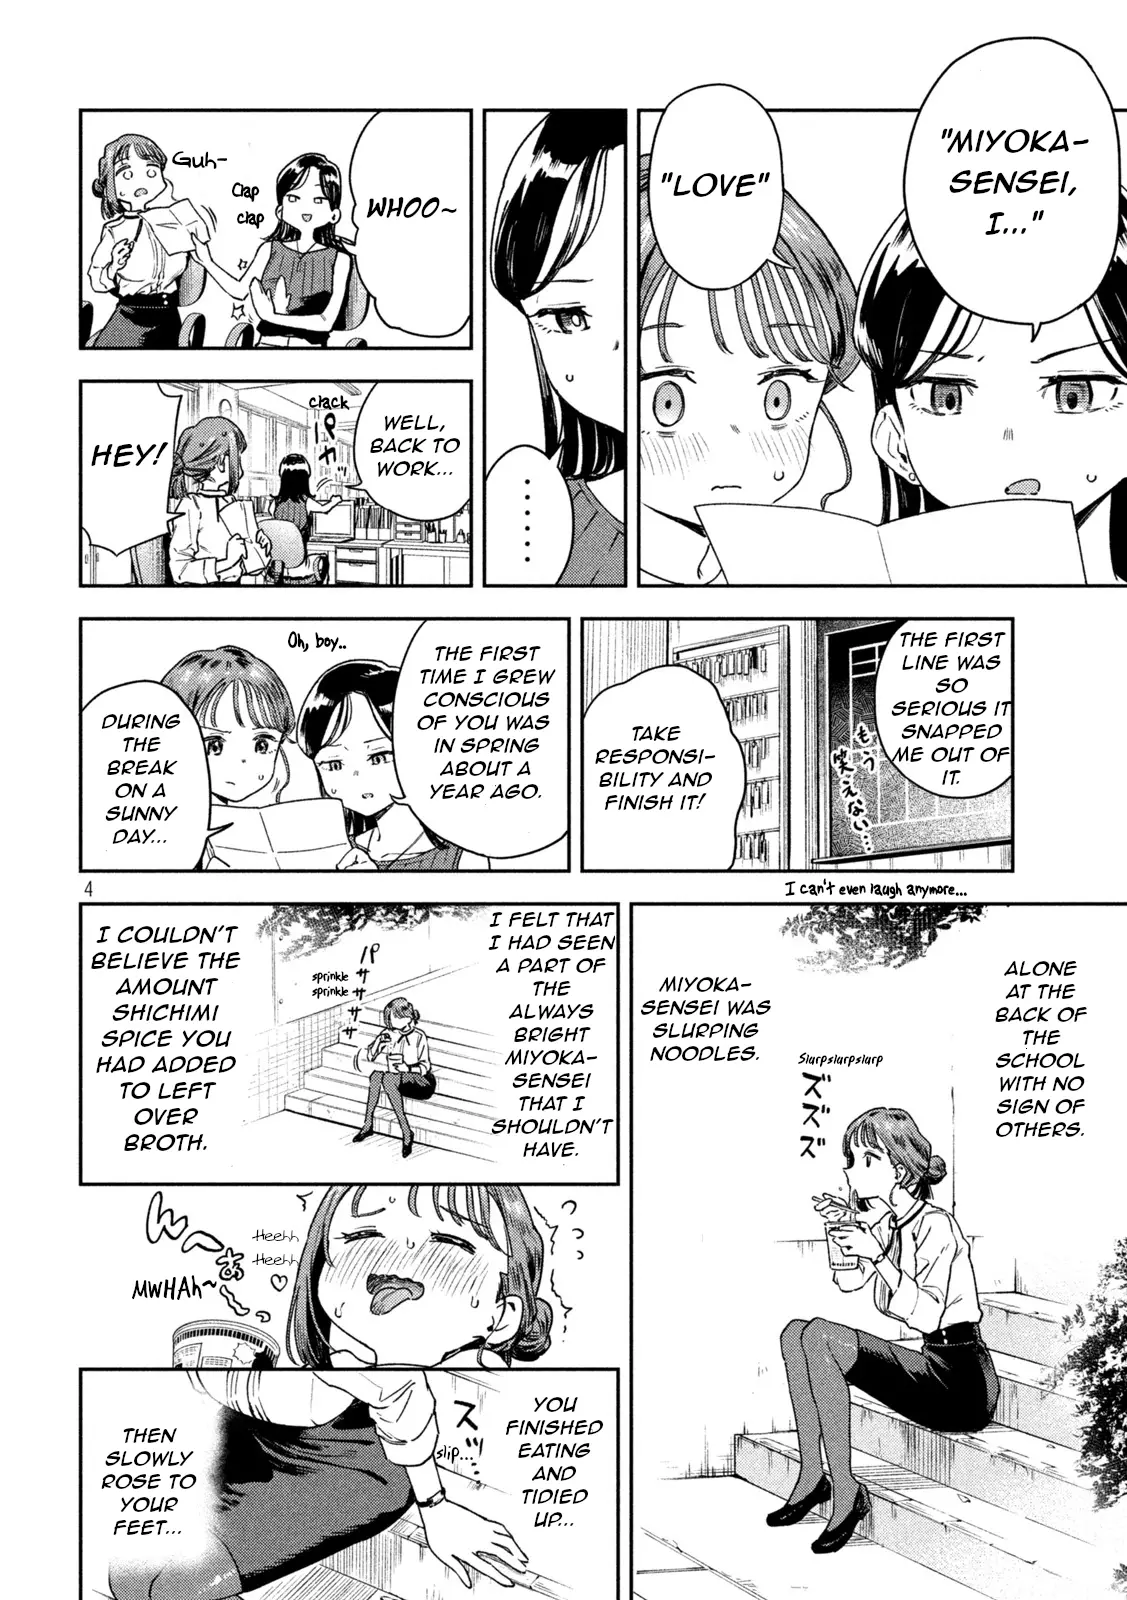 Miyo-Chan Sensei Said So - 5 page 4-40e90873